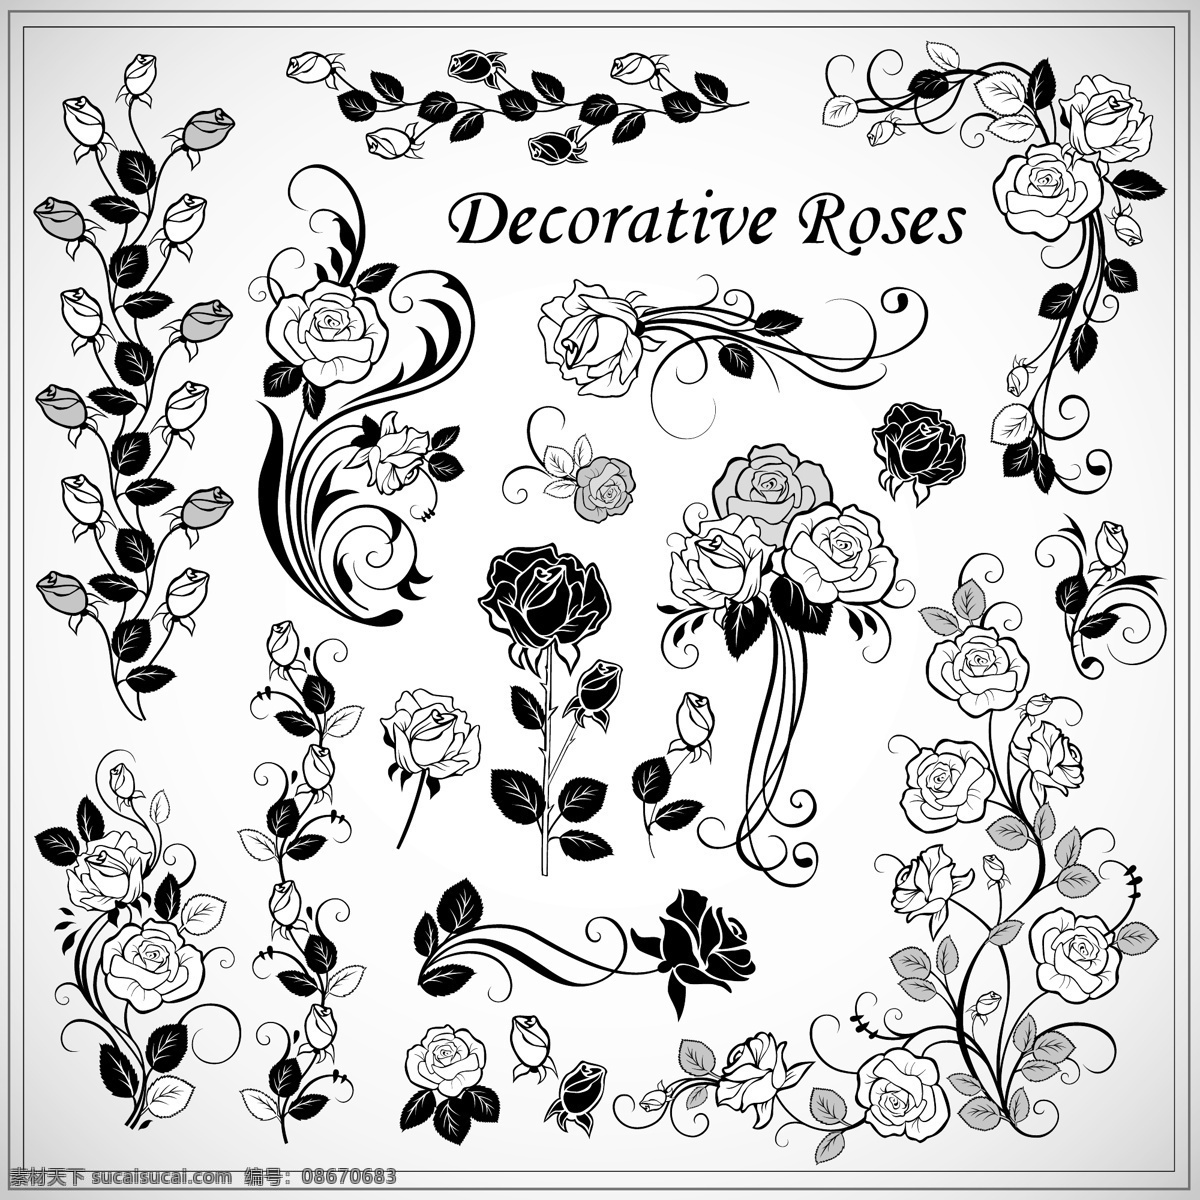 装饰 玫瑰 图案 矢量 装饰的玫瑰 玫瑰的图案 花纹 边框 自由 背景 下 复古 矢量图 花纹花边